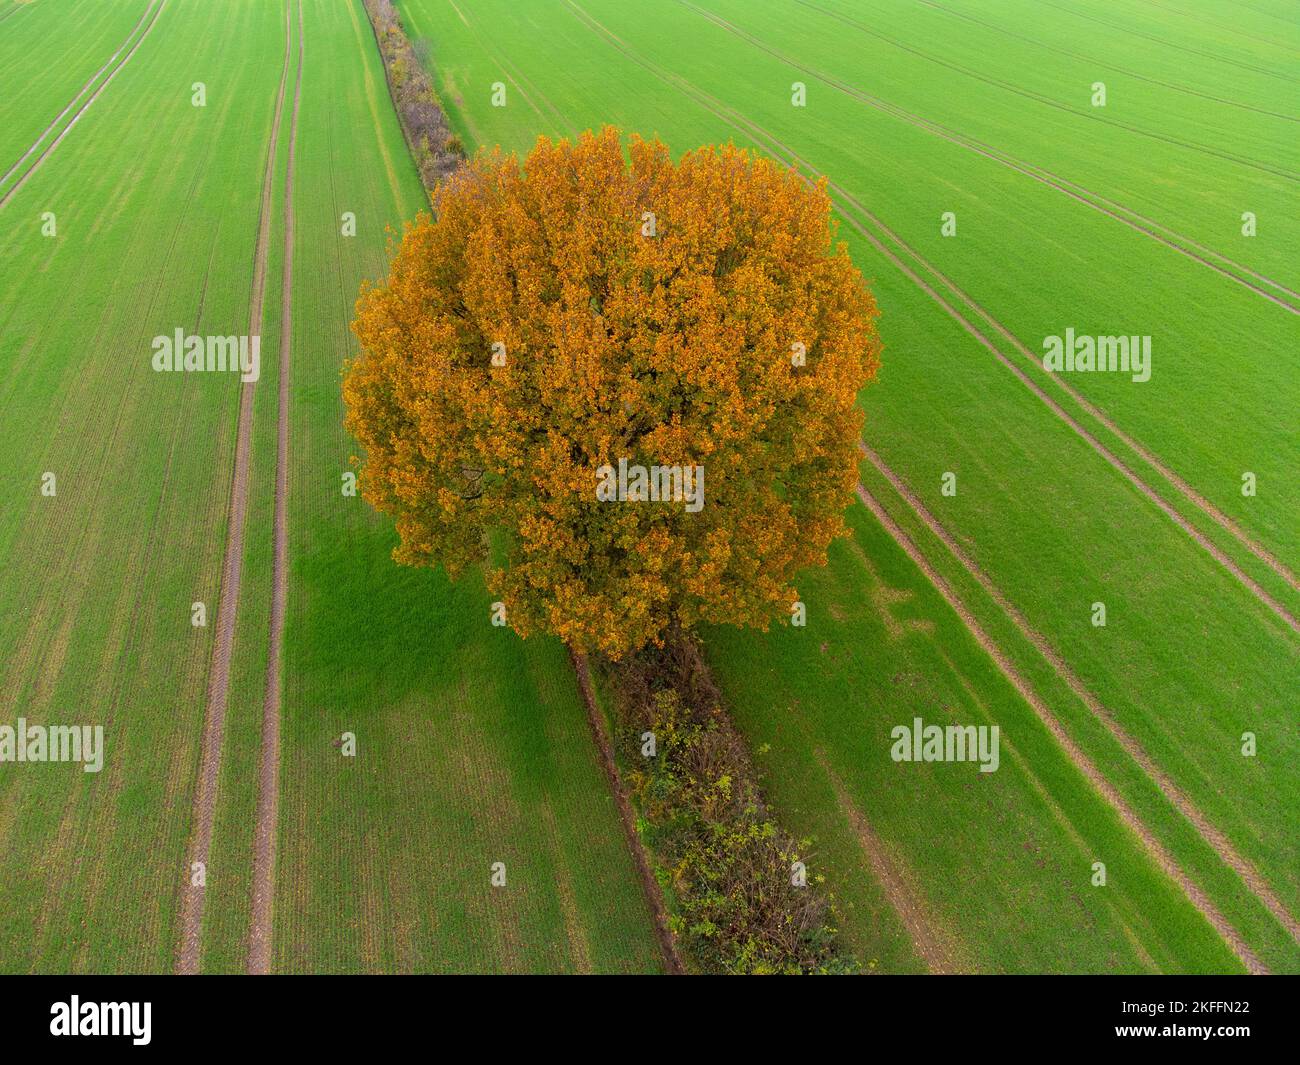 Ackerlandschaft im Herbst aus der Sicht einer Drohne Stock Photo